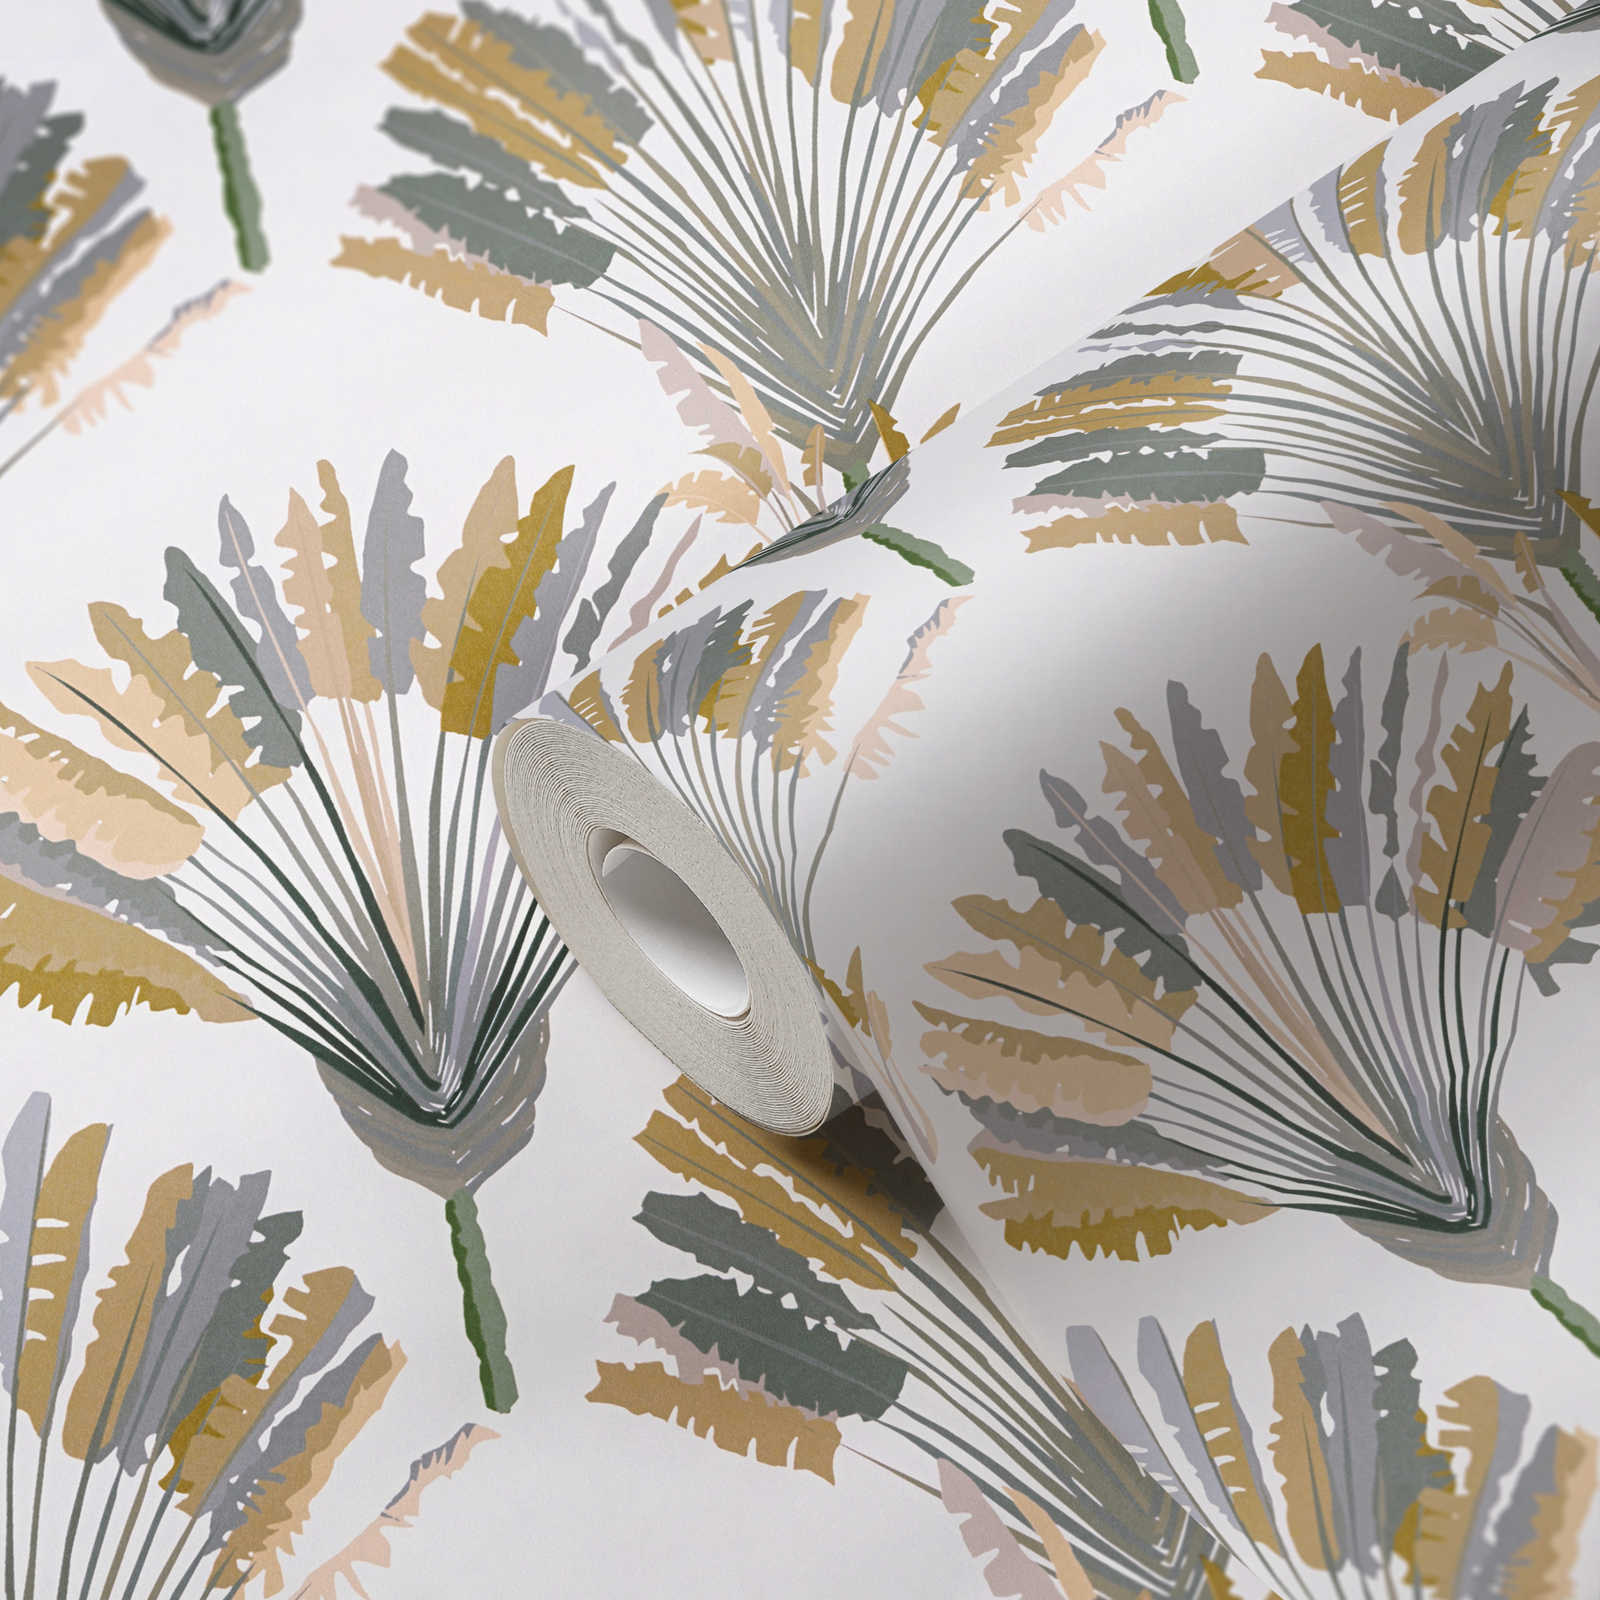             Palmboom behang met patroonprint in moderne stijl - geel, grijs, wit
        